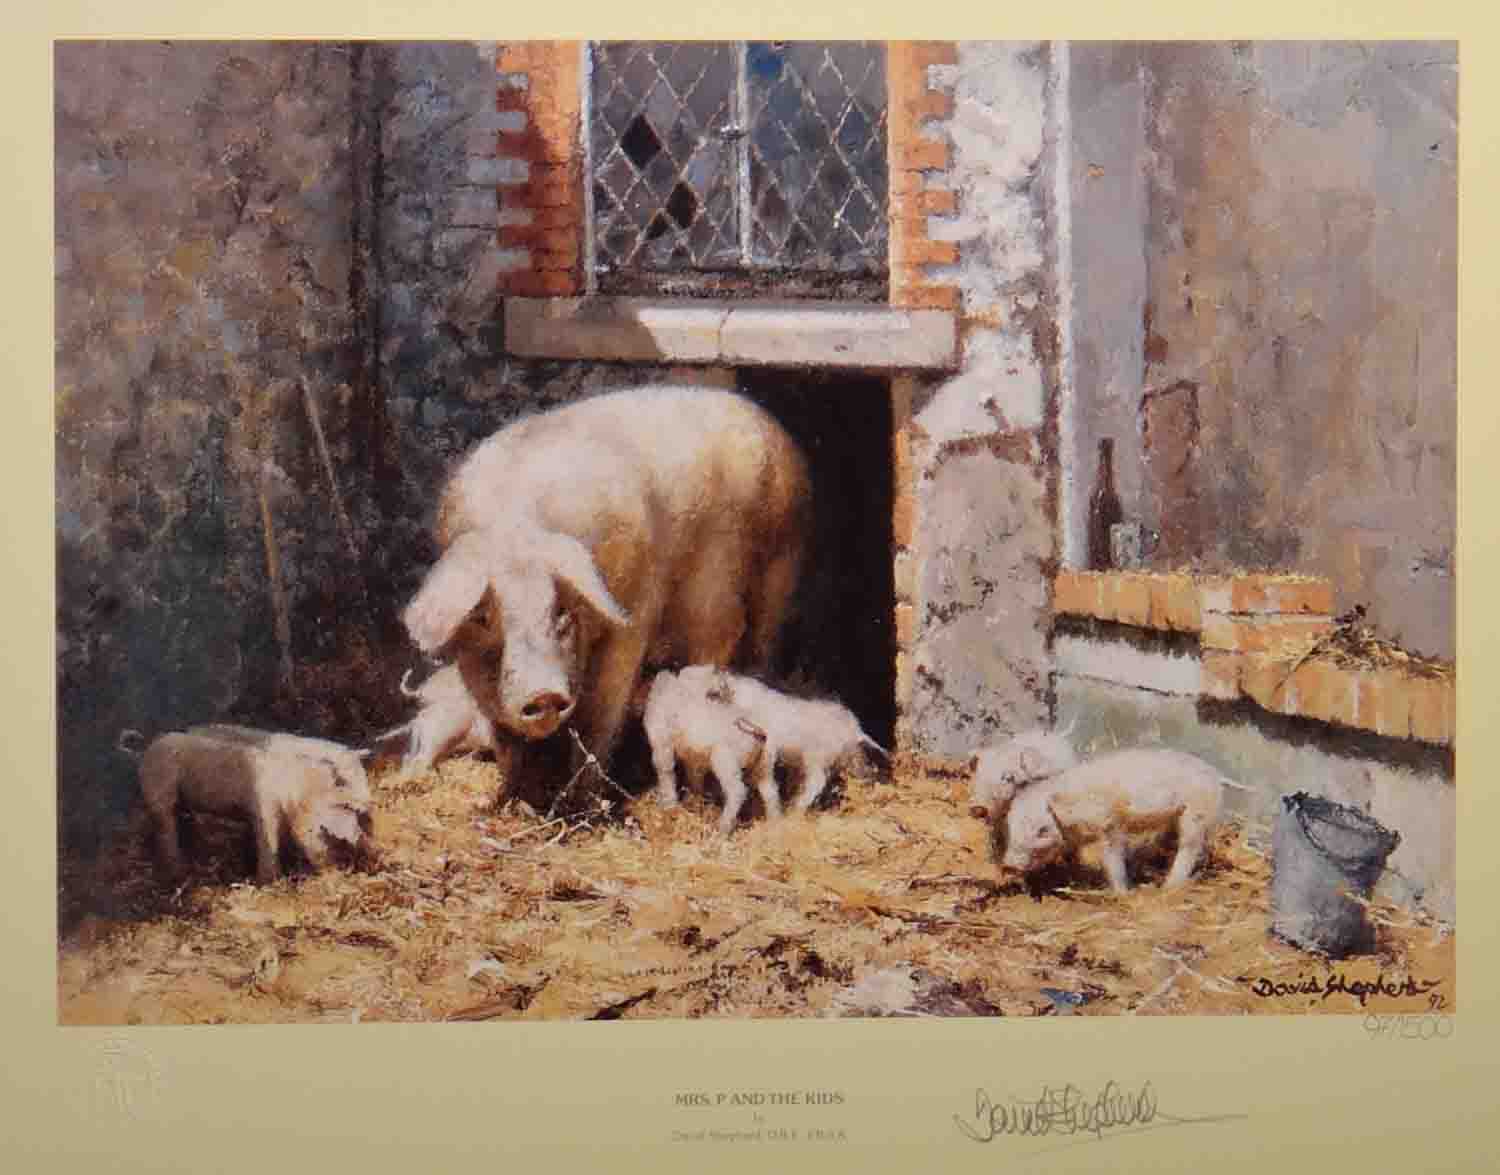 david shepherd, Mrs P and the kids, print